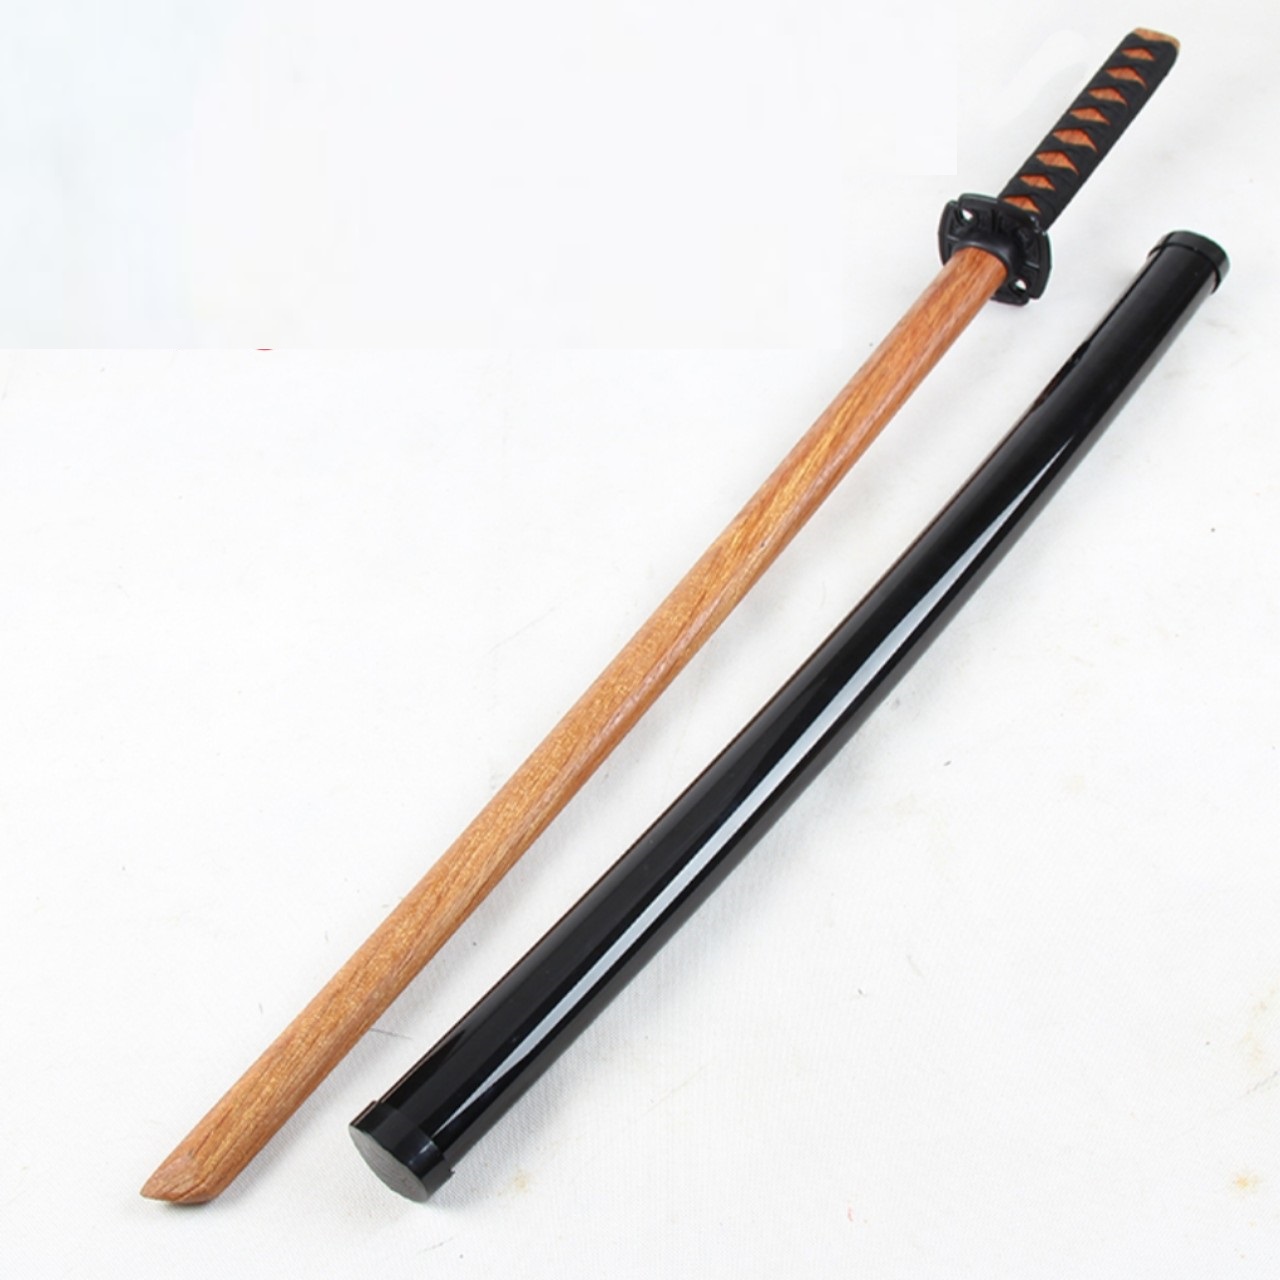 Kiếm nhật katana làm bằng gỗ cứng dài 1m dùng để tập võ, tập thể lực, luyện kiếm, trưng bày đồ phong thủy hoặc cosplay nhân vật anime.